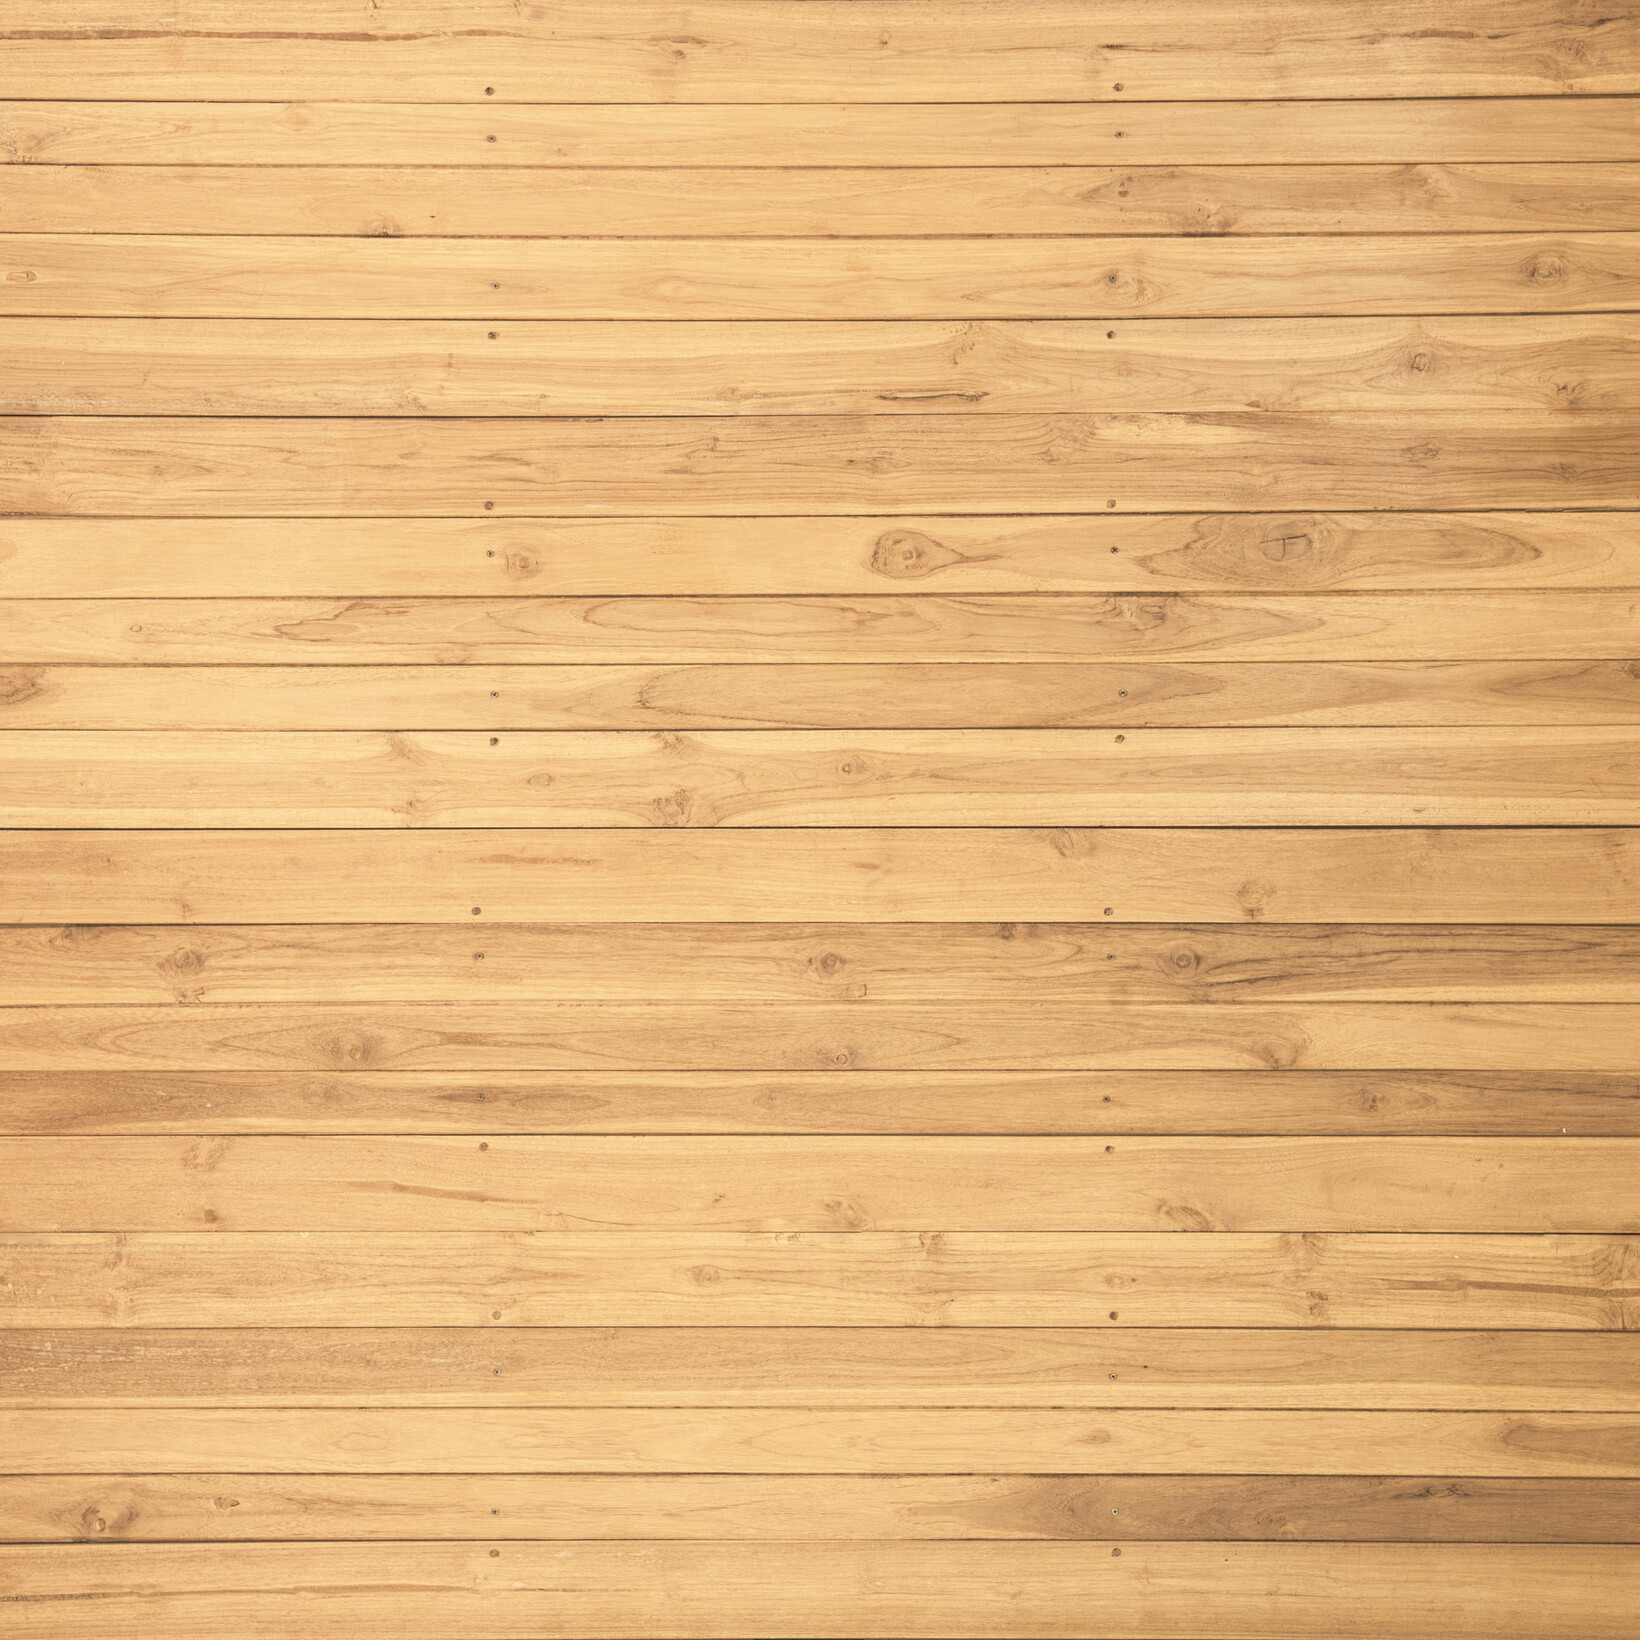 Brown wooden parquet flooring